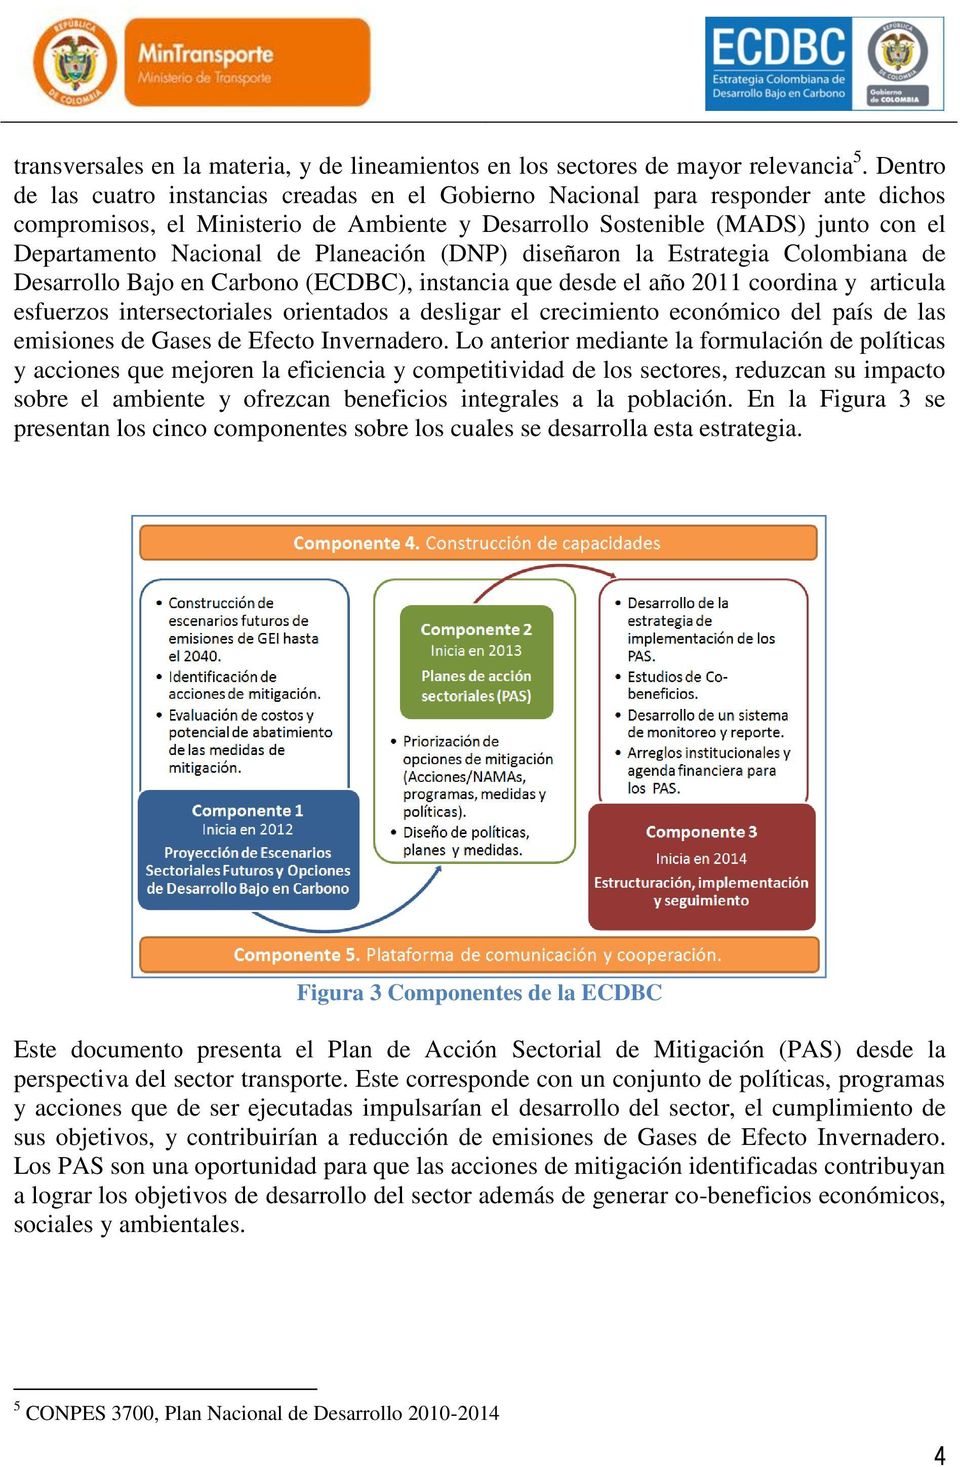 Planeación (DNP) diseñaron la Estrategia Colombiana de Desarrollo Bajo en Carbono (ECDBC), instancia que desde el año 2011 coordina y articula esfuerzos intersectoriales orientados a desligar el